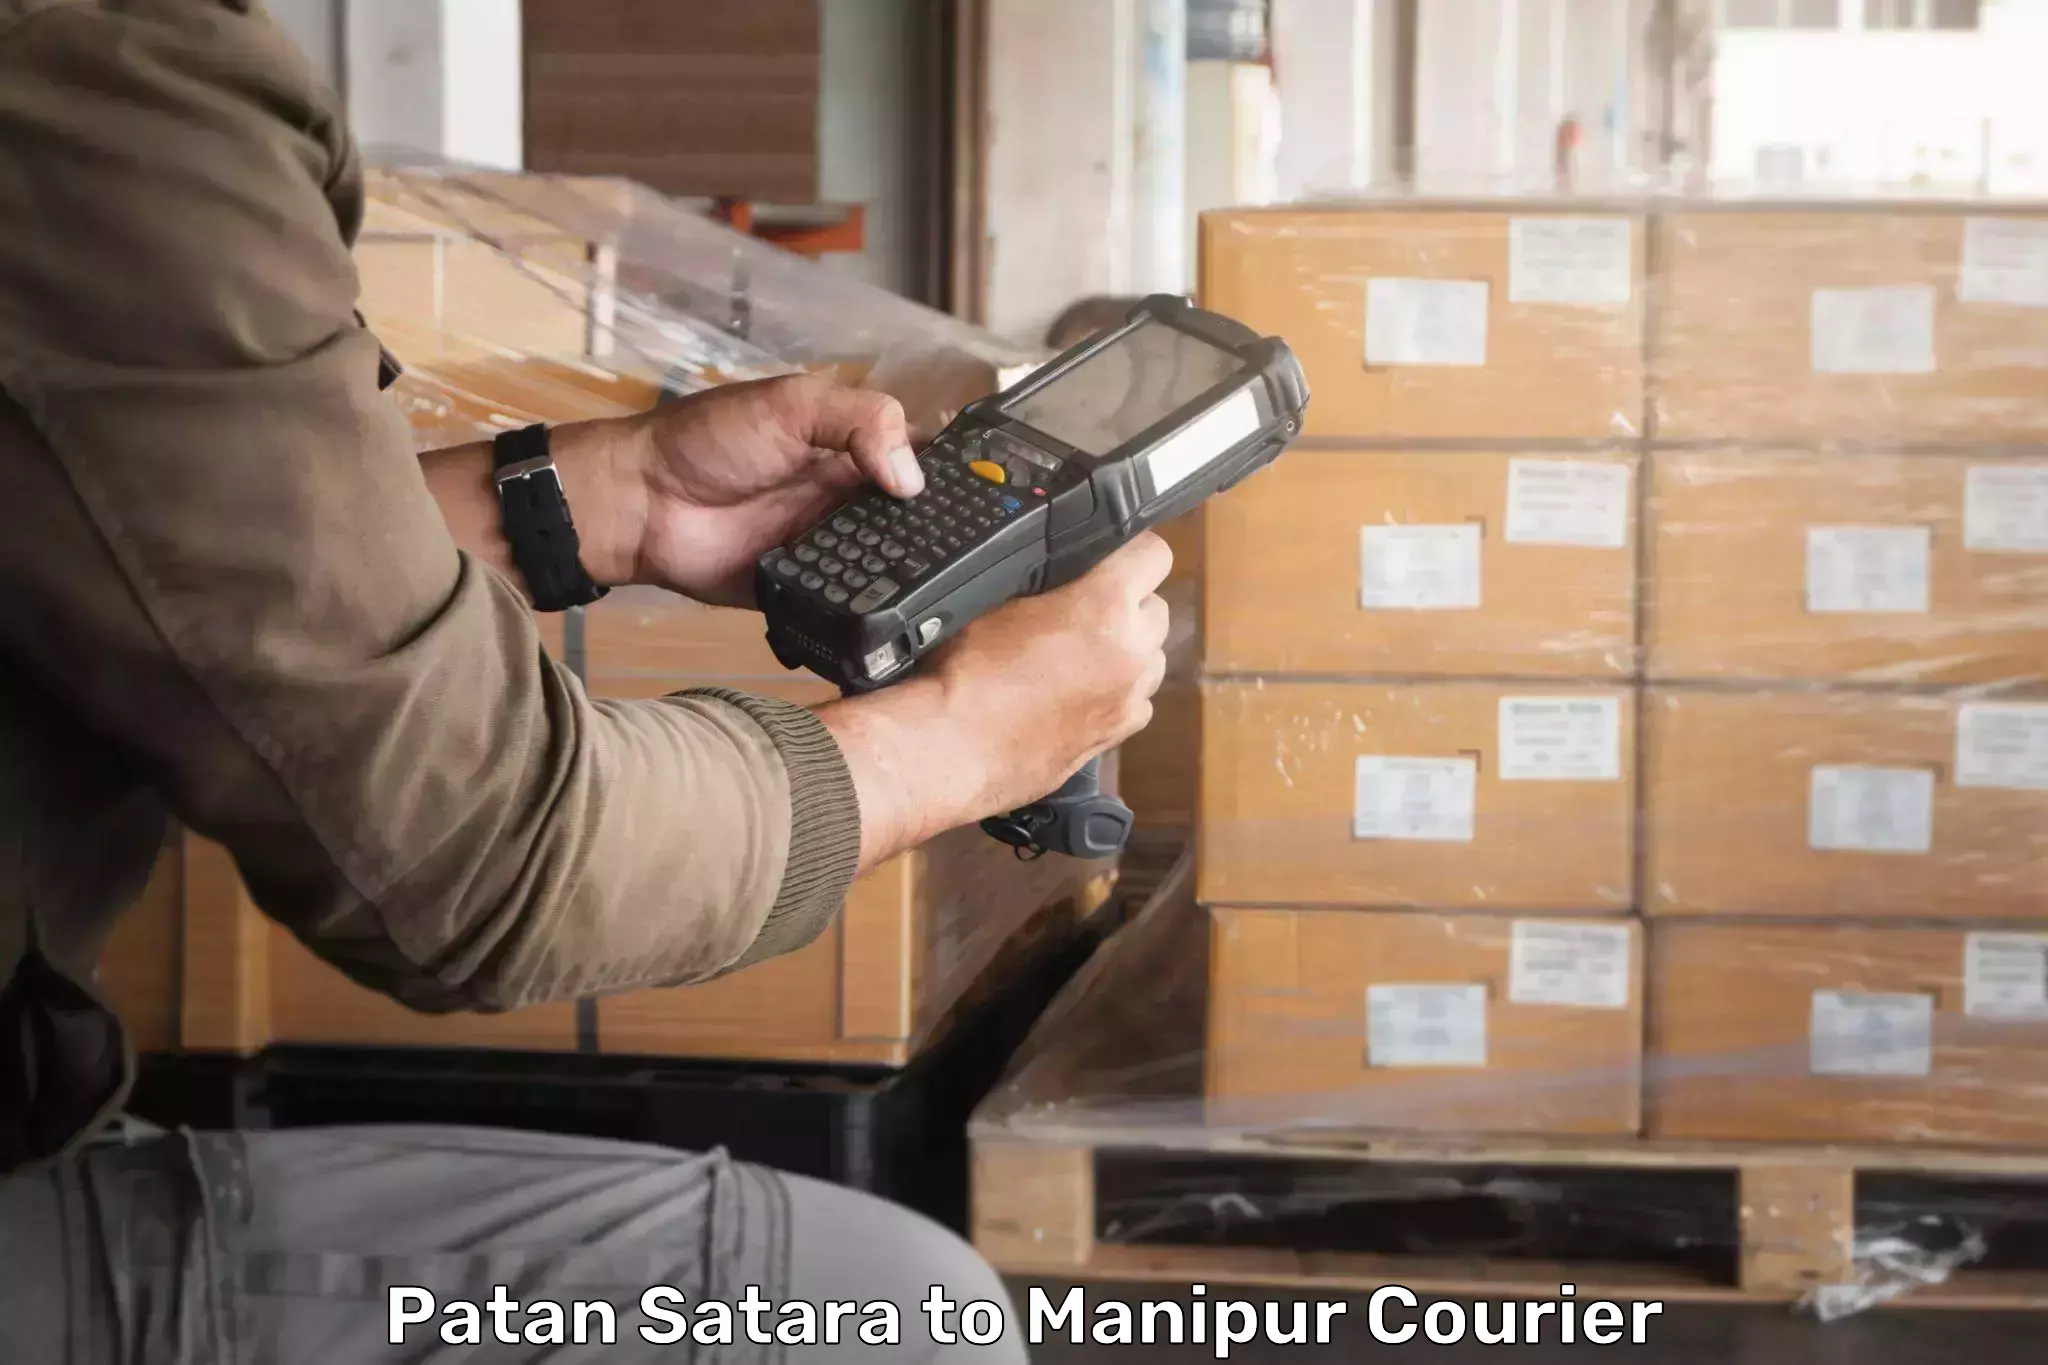 Customer-focused courier Patan Satara to Jiribam